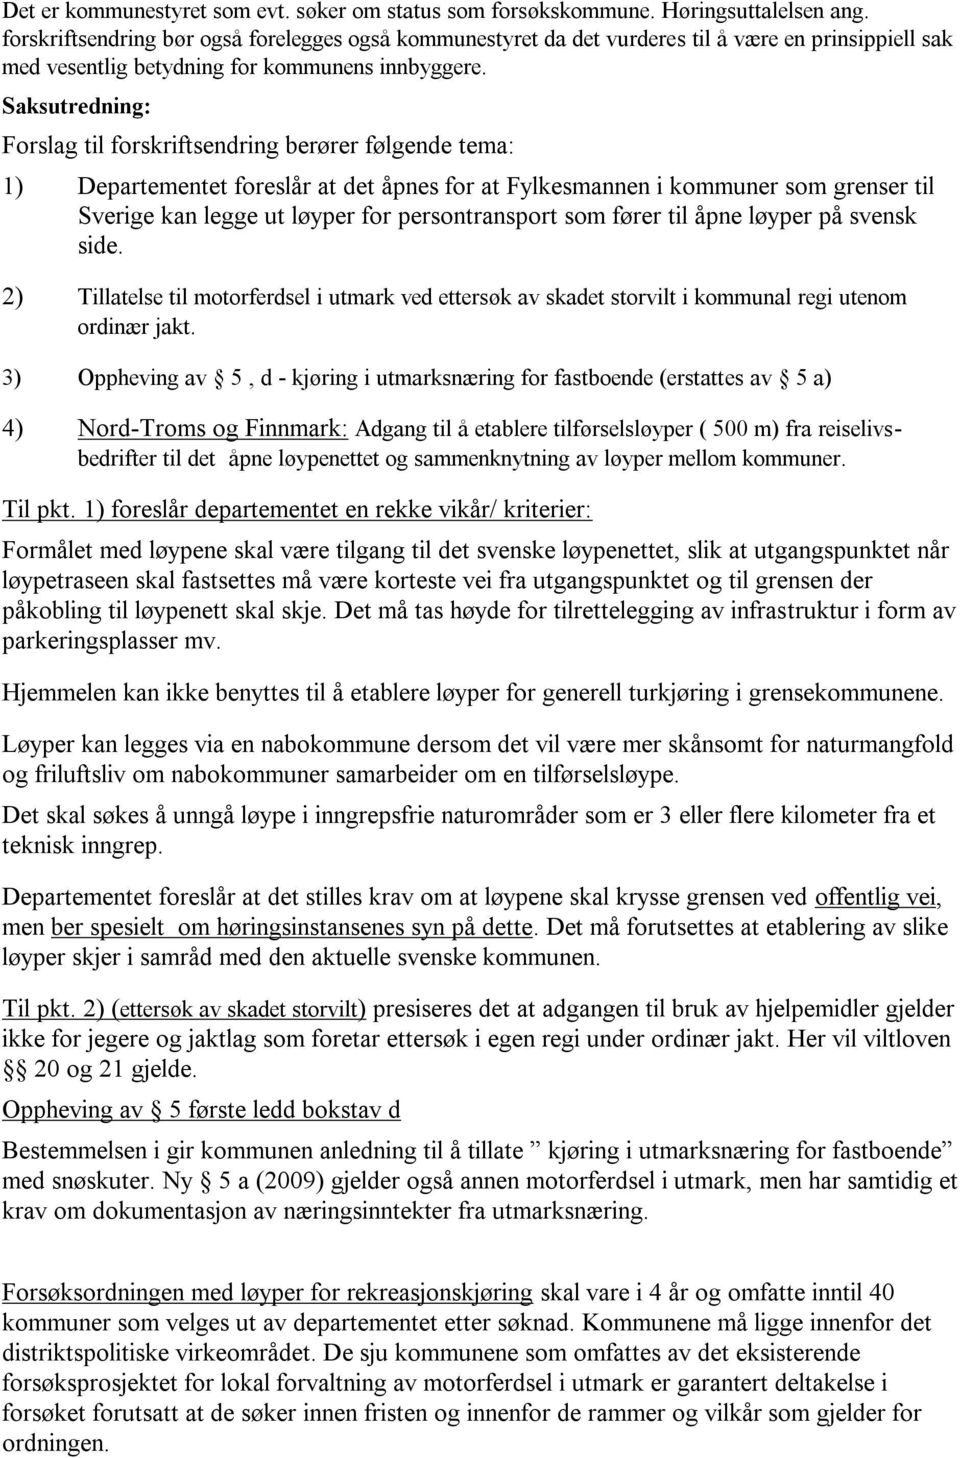 Saksutredning: Forslag til forskriftsendring berører følgende tema: 1) Departementet foreslår at det åpnes for at Fylkesmannen i kommuner som grenser til Sverige kan legge ut løyper for